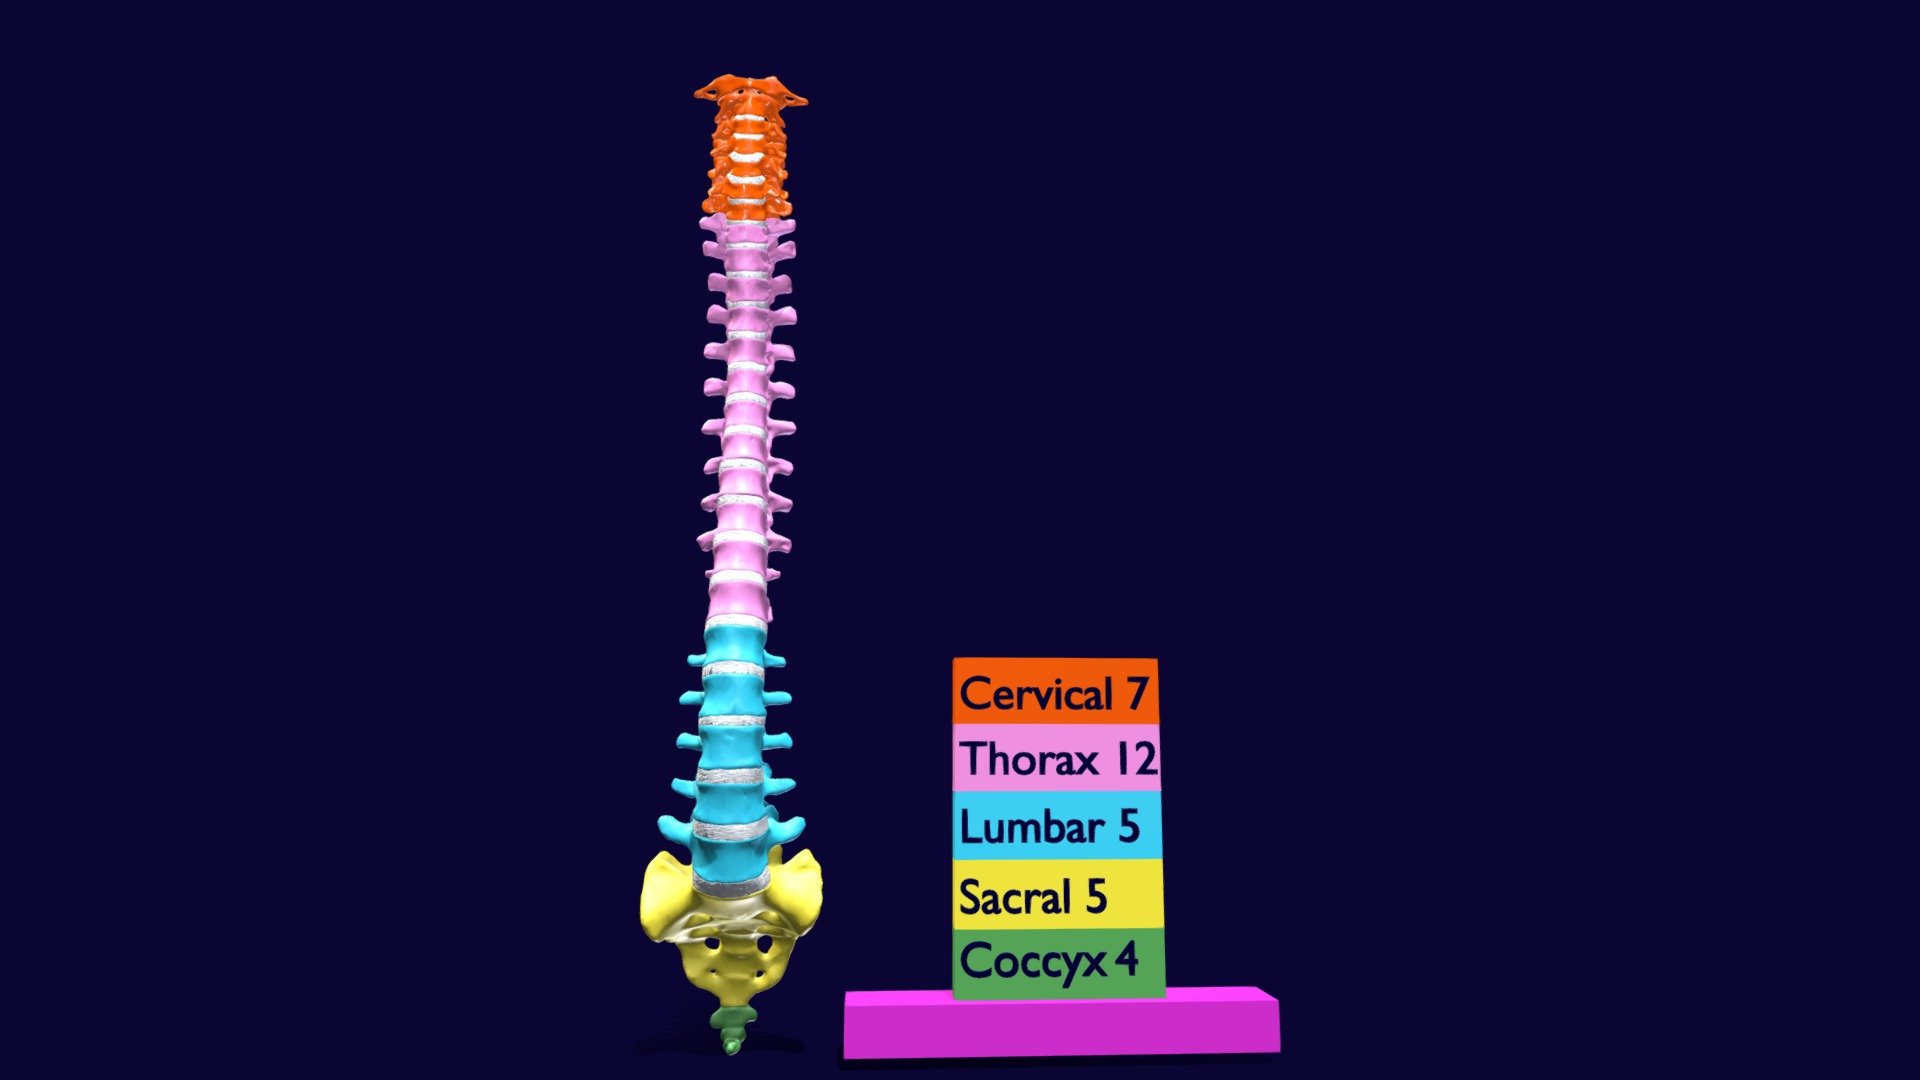 Vertebrae vertebral column color labelled